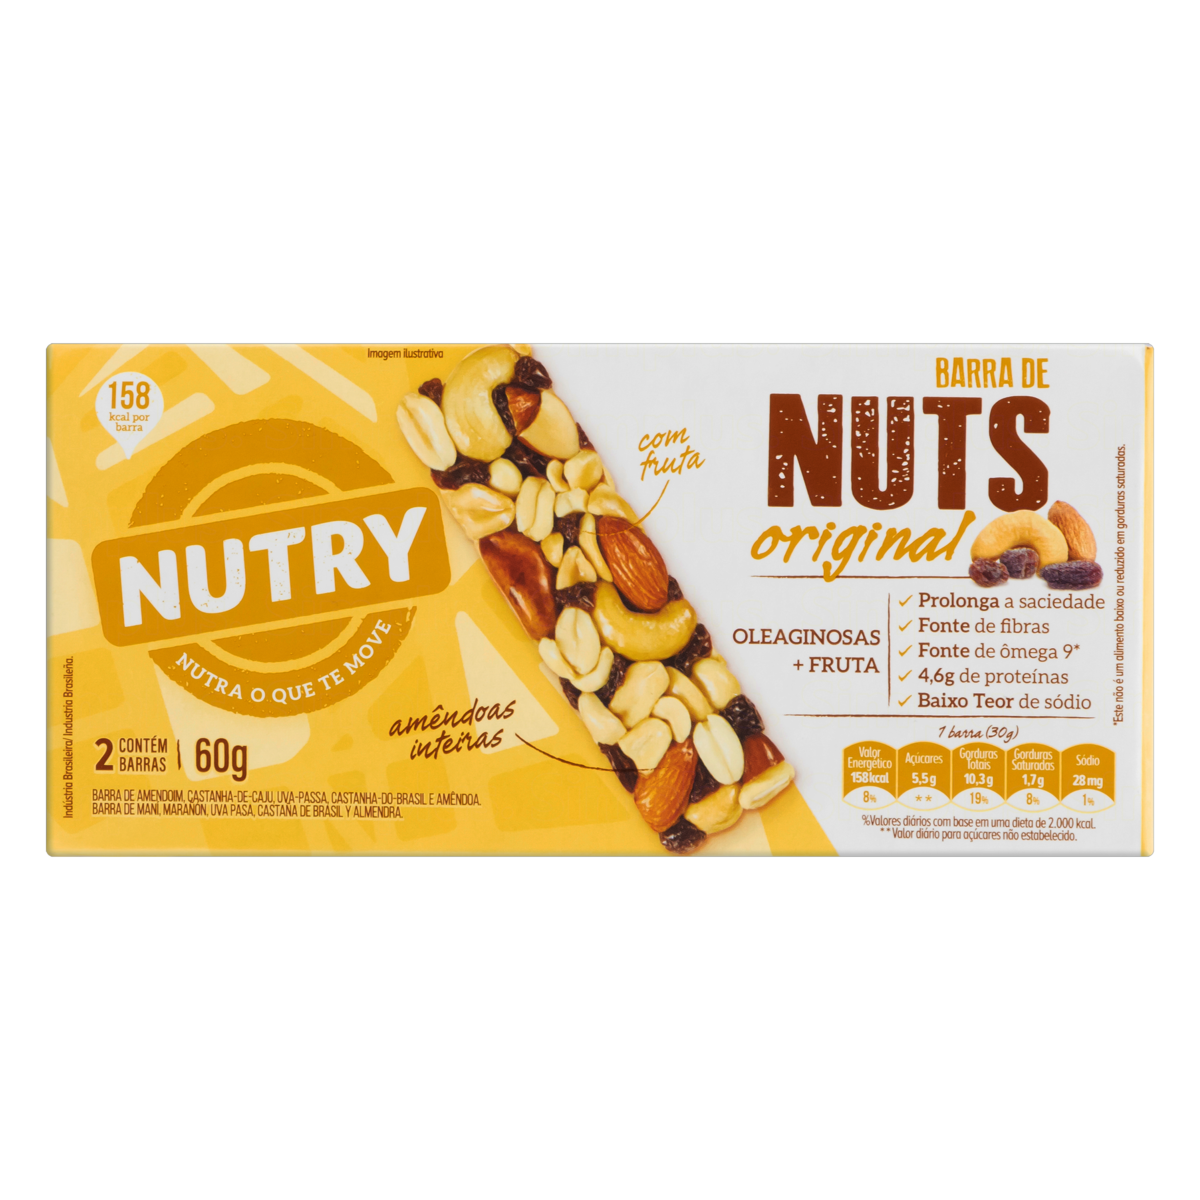 7891331015039 - PACK BARRA DE NUTS ORIGINAL NUTRY CAIXA 60G 2 UNIDADES